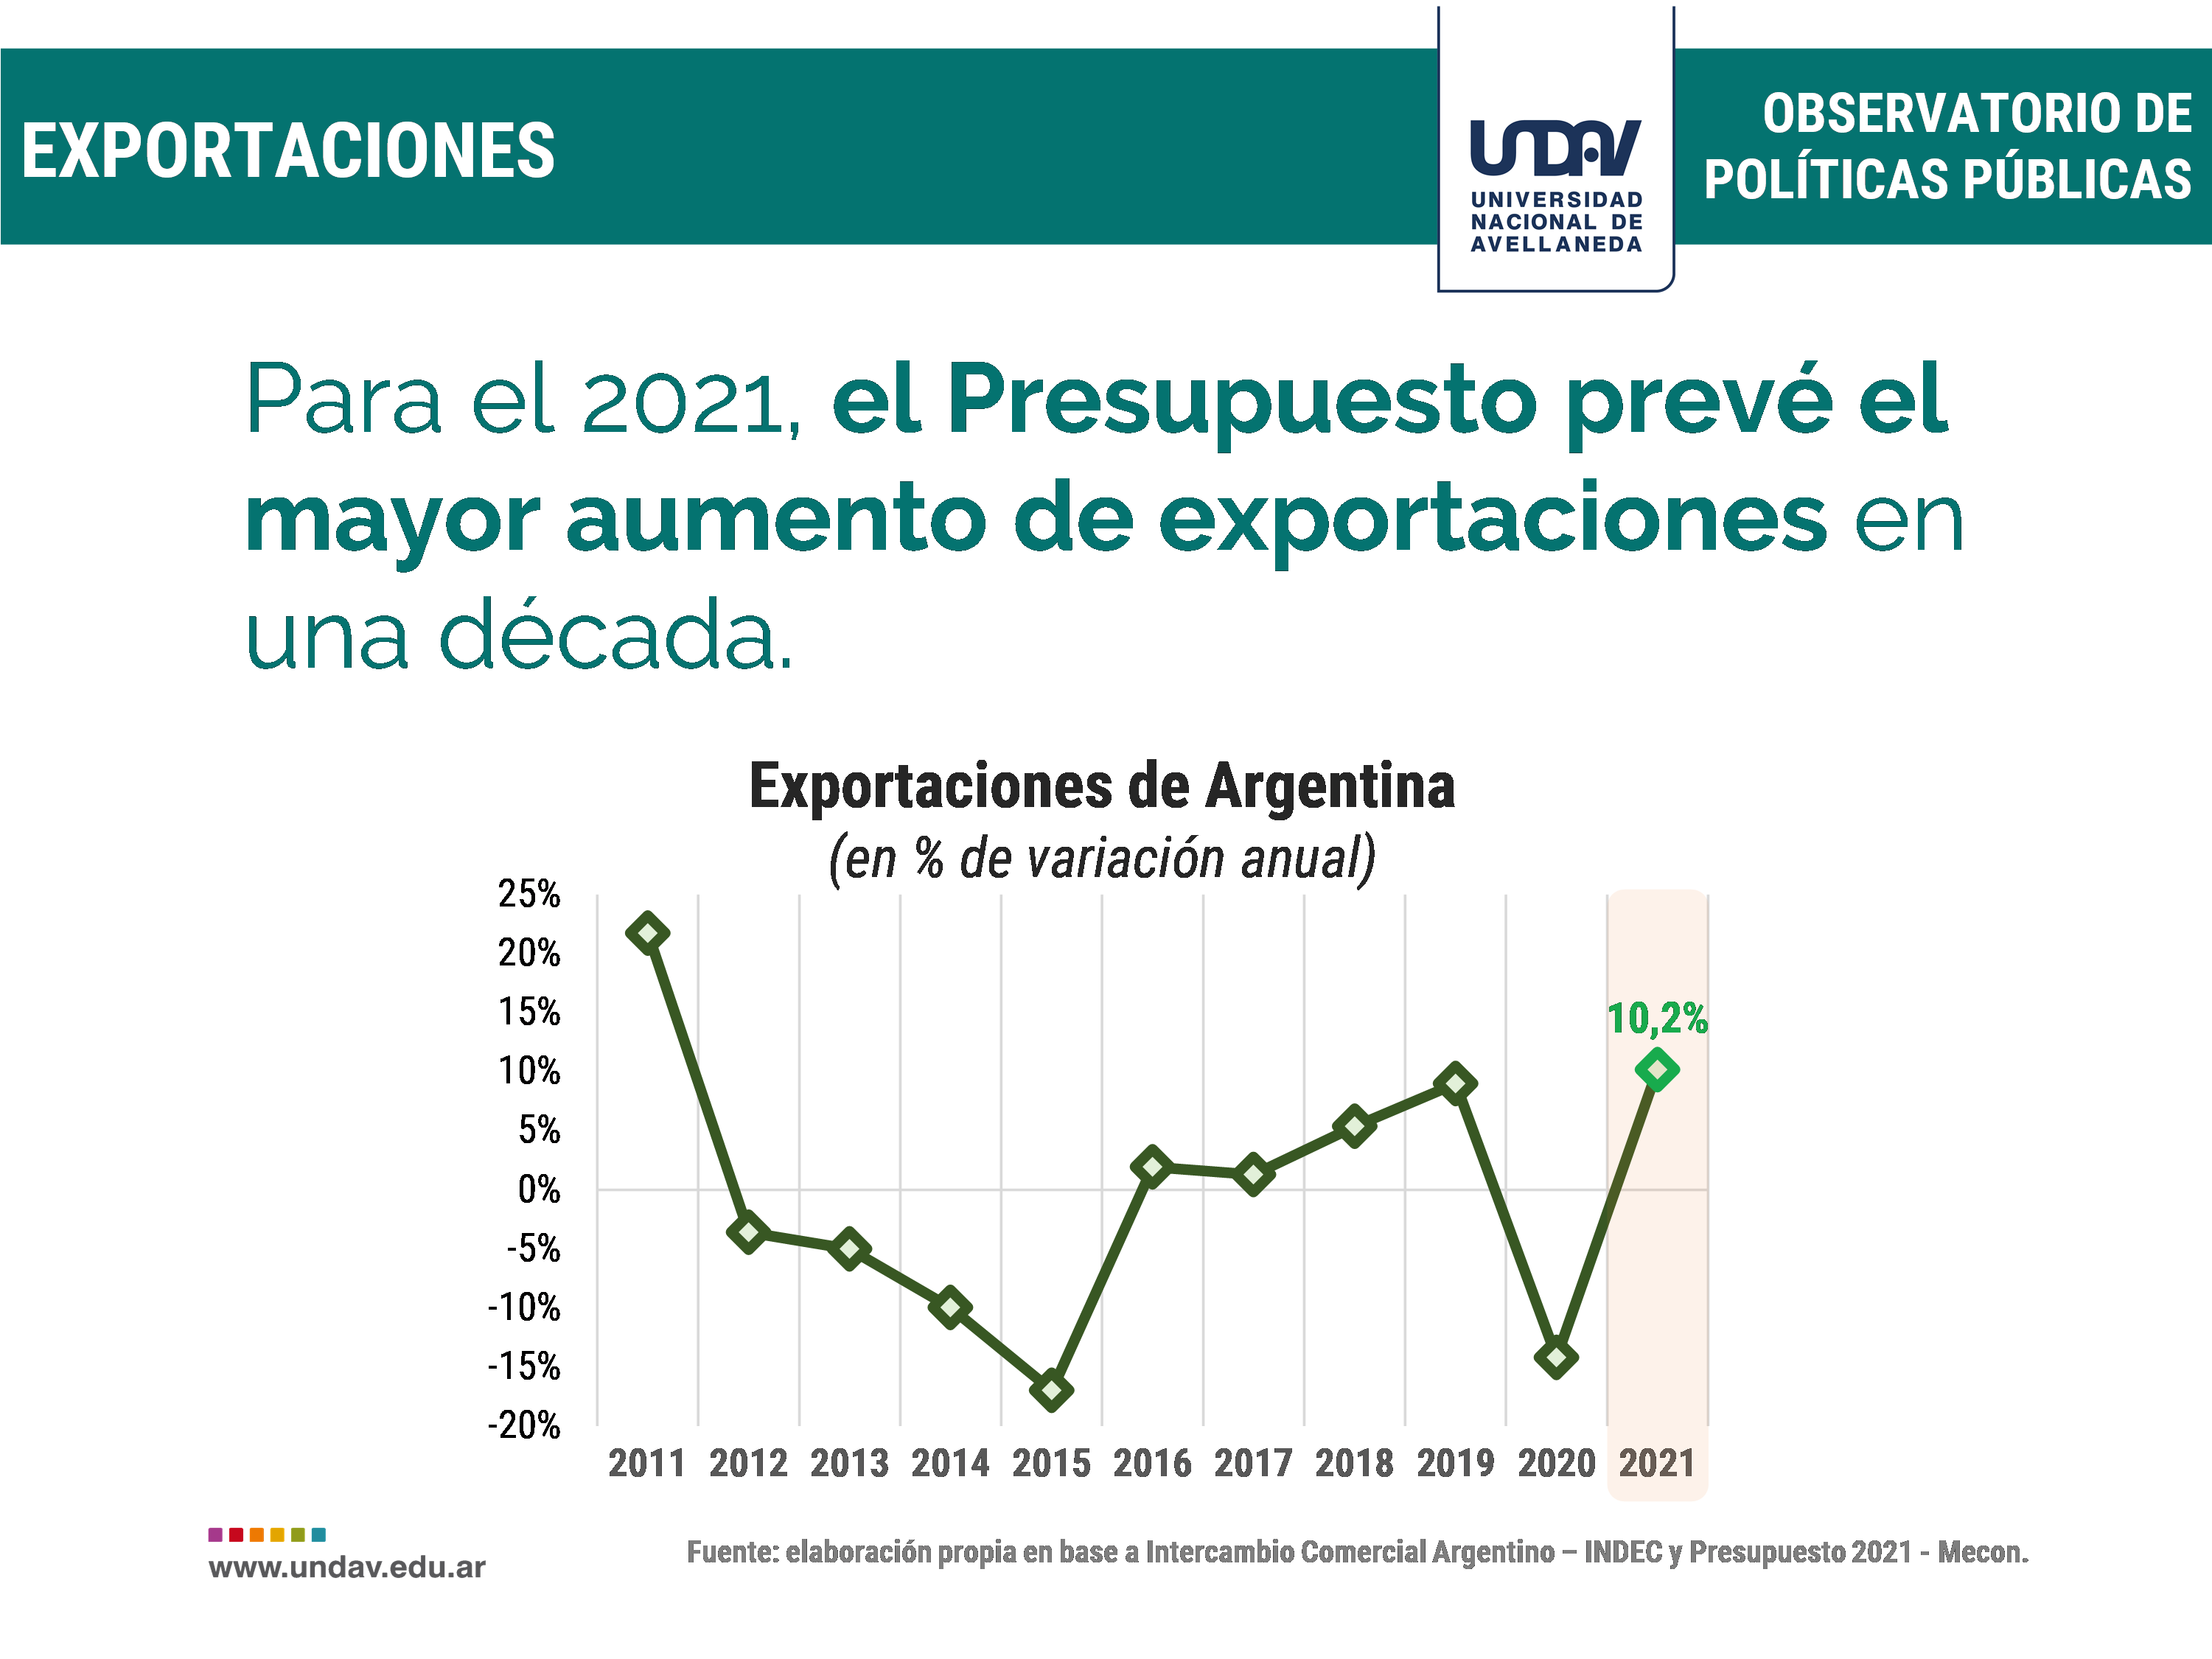 El Presupuesto 2021 prevé el mayor aumento de las exportaciones argentinas  en una década - La Ciudad Avellaneda